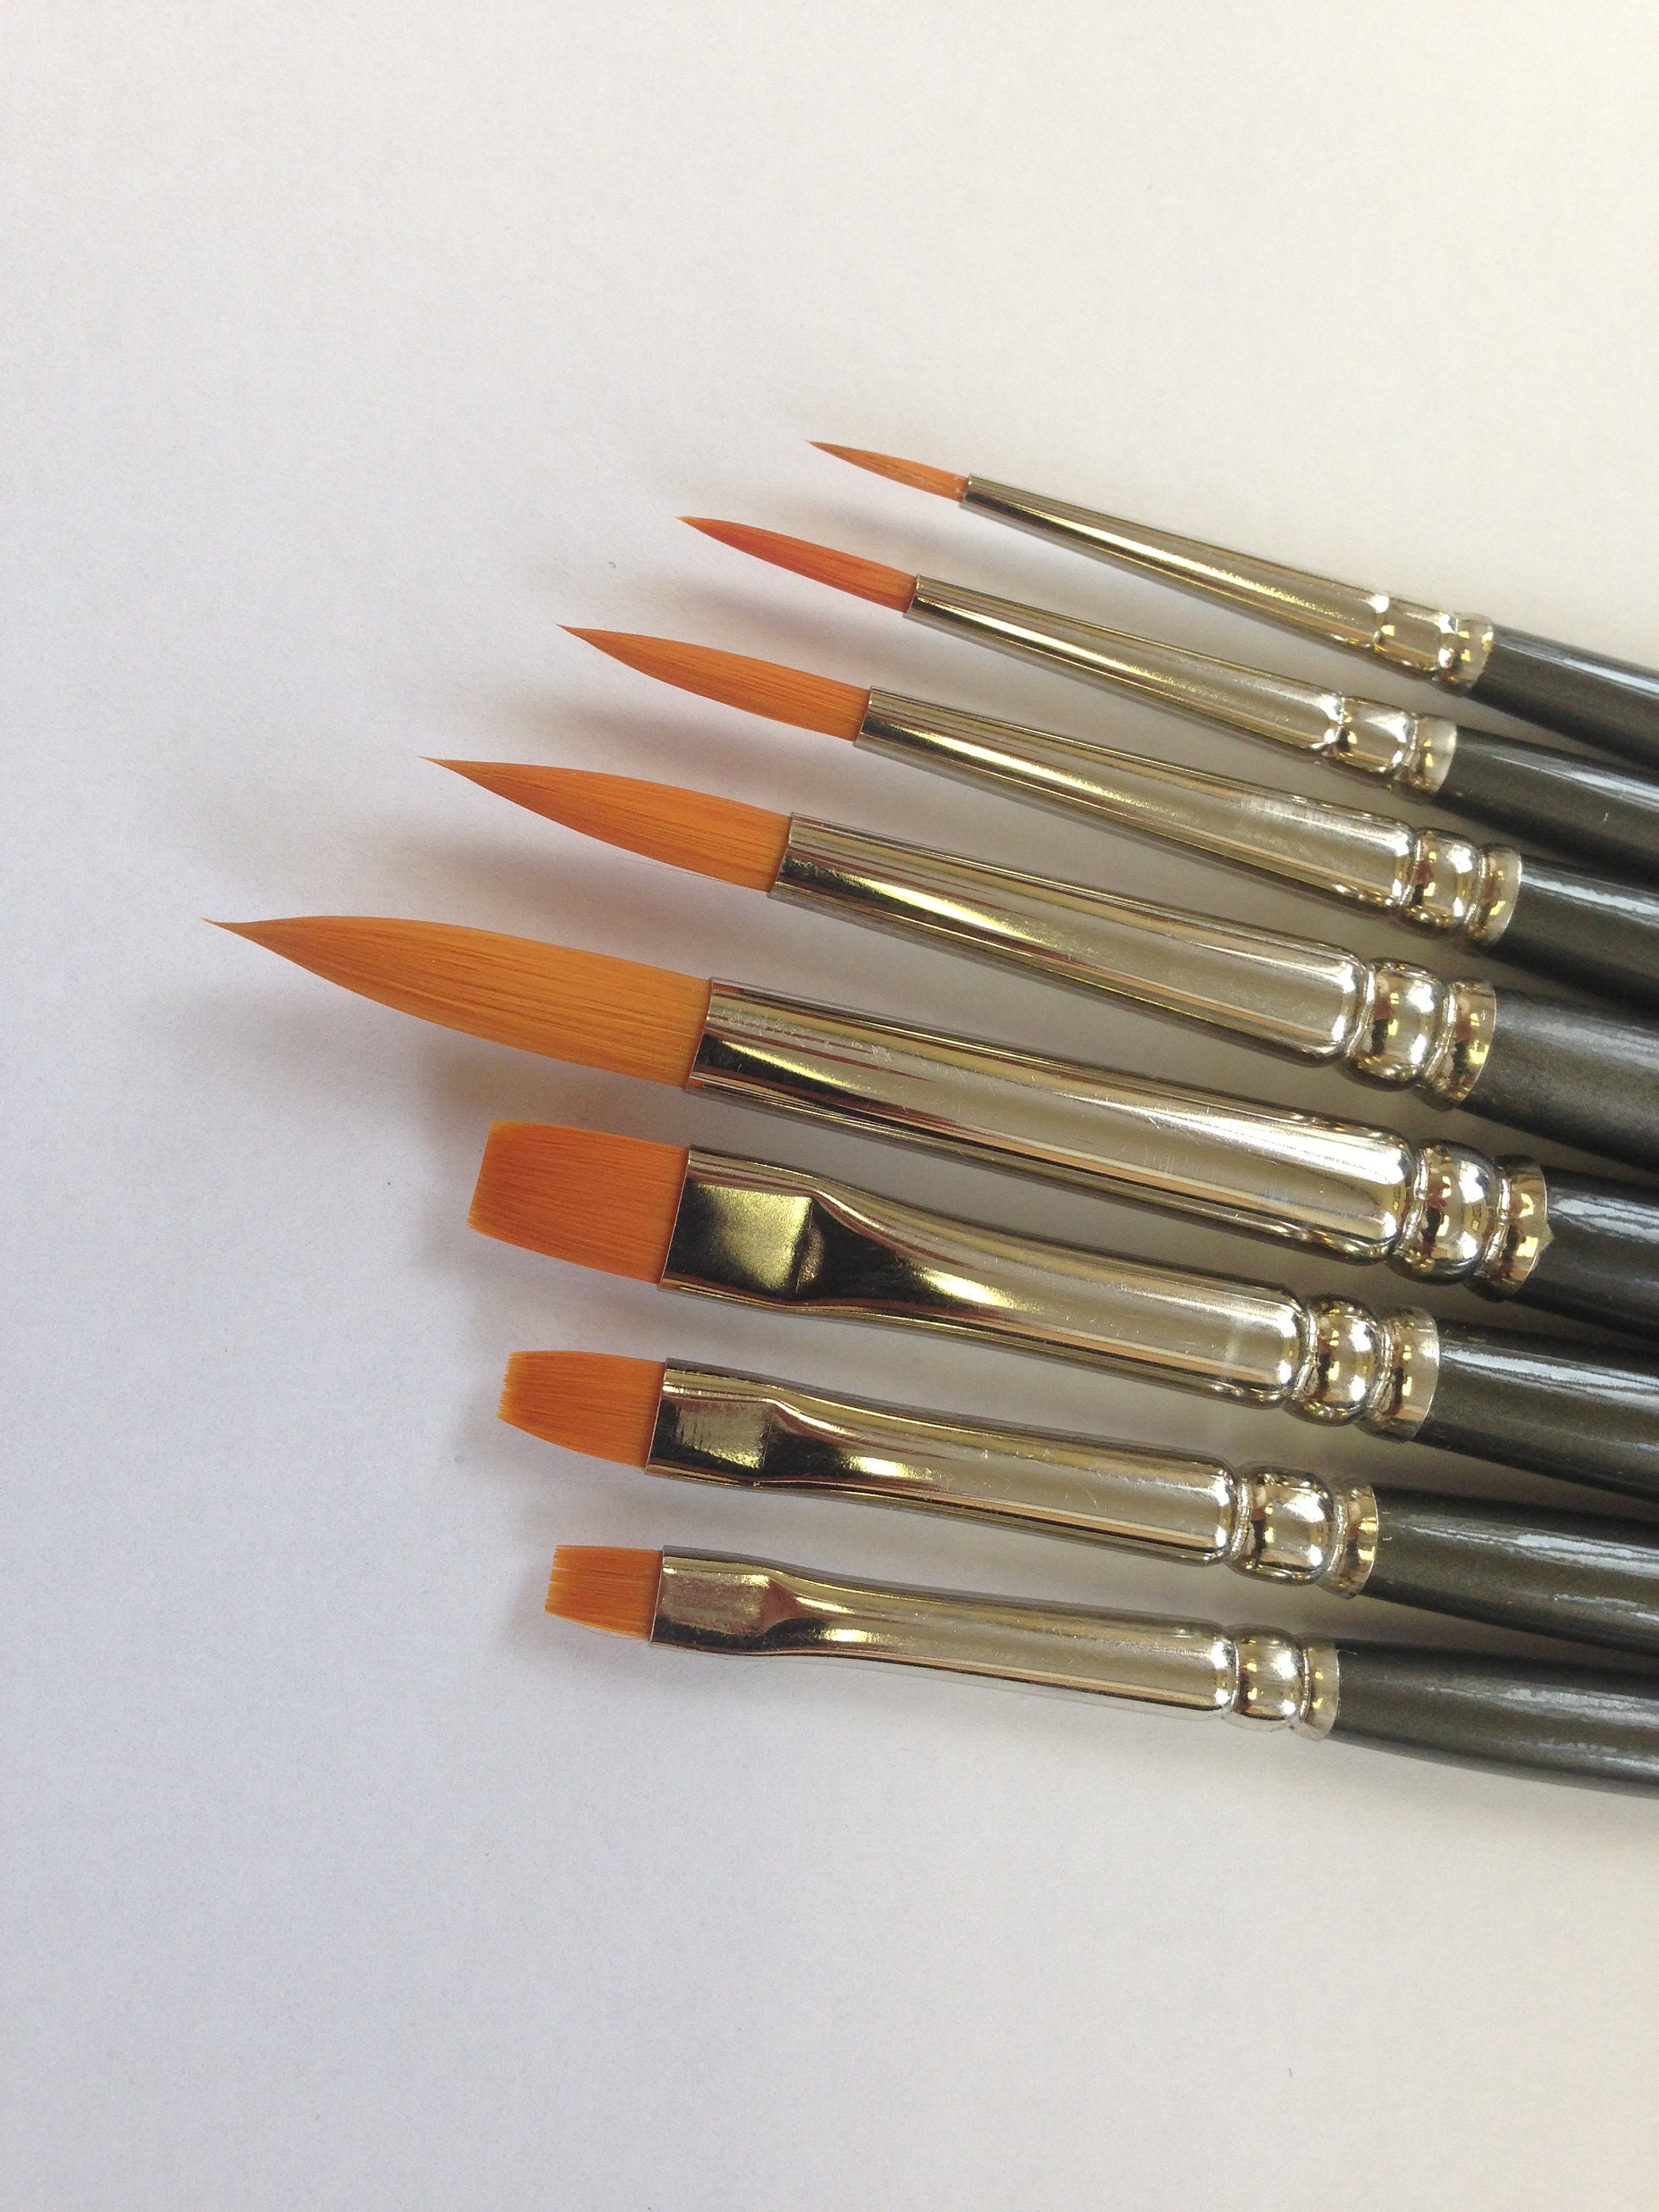 Major Brushes Fine Detail Paint Brush Set of 6, for Art, Model Making, Hobby